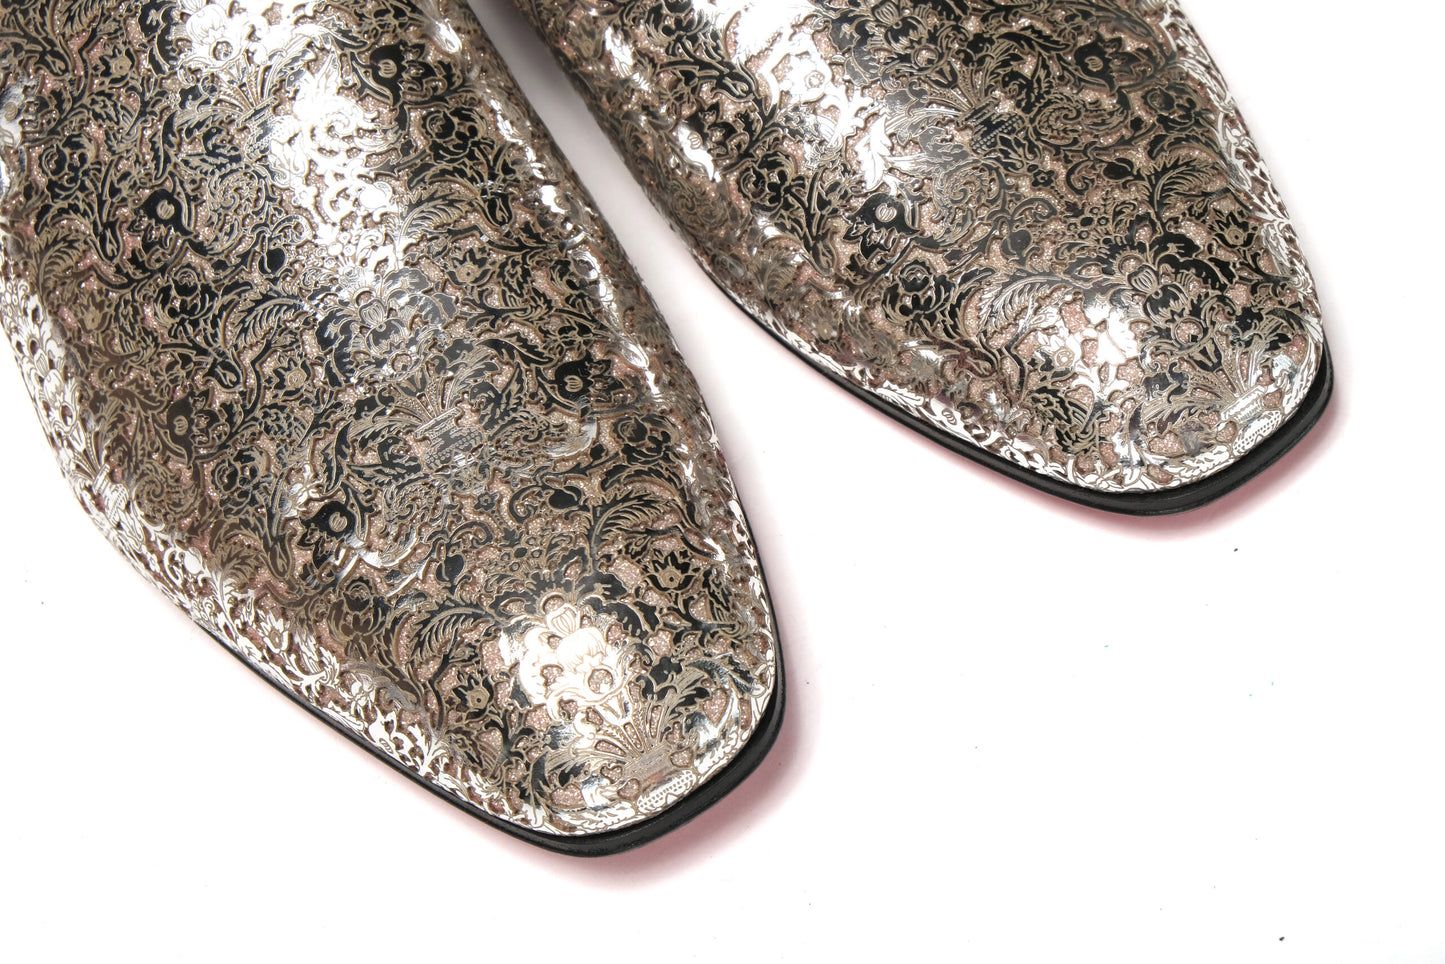 Silver Version Dandelion Flat Shoes